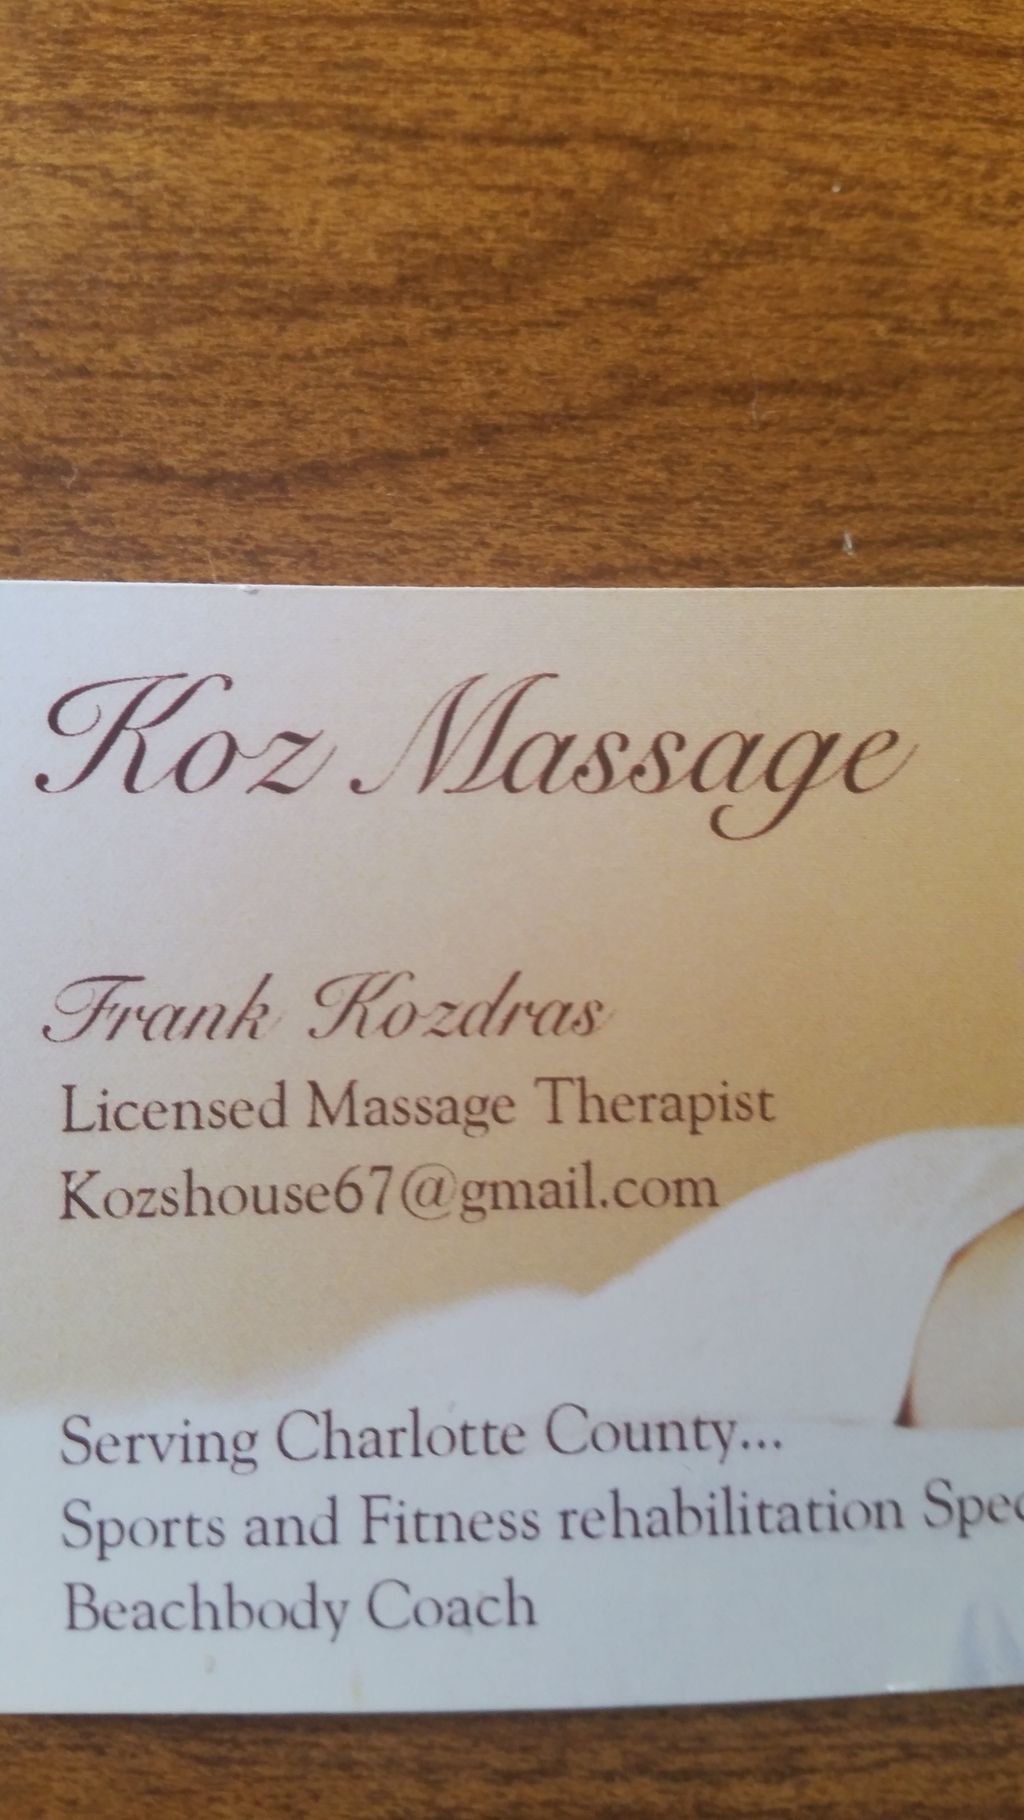 Koz Massage and Personal Training